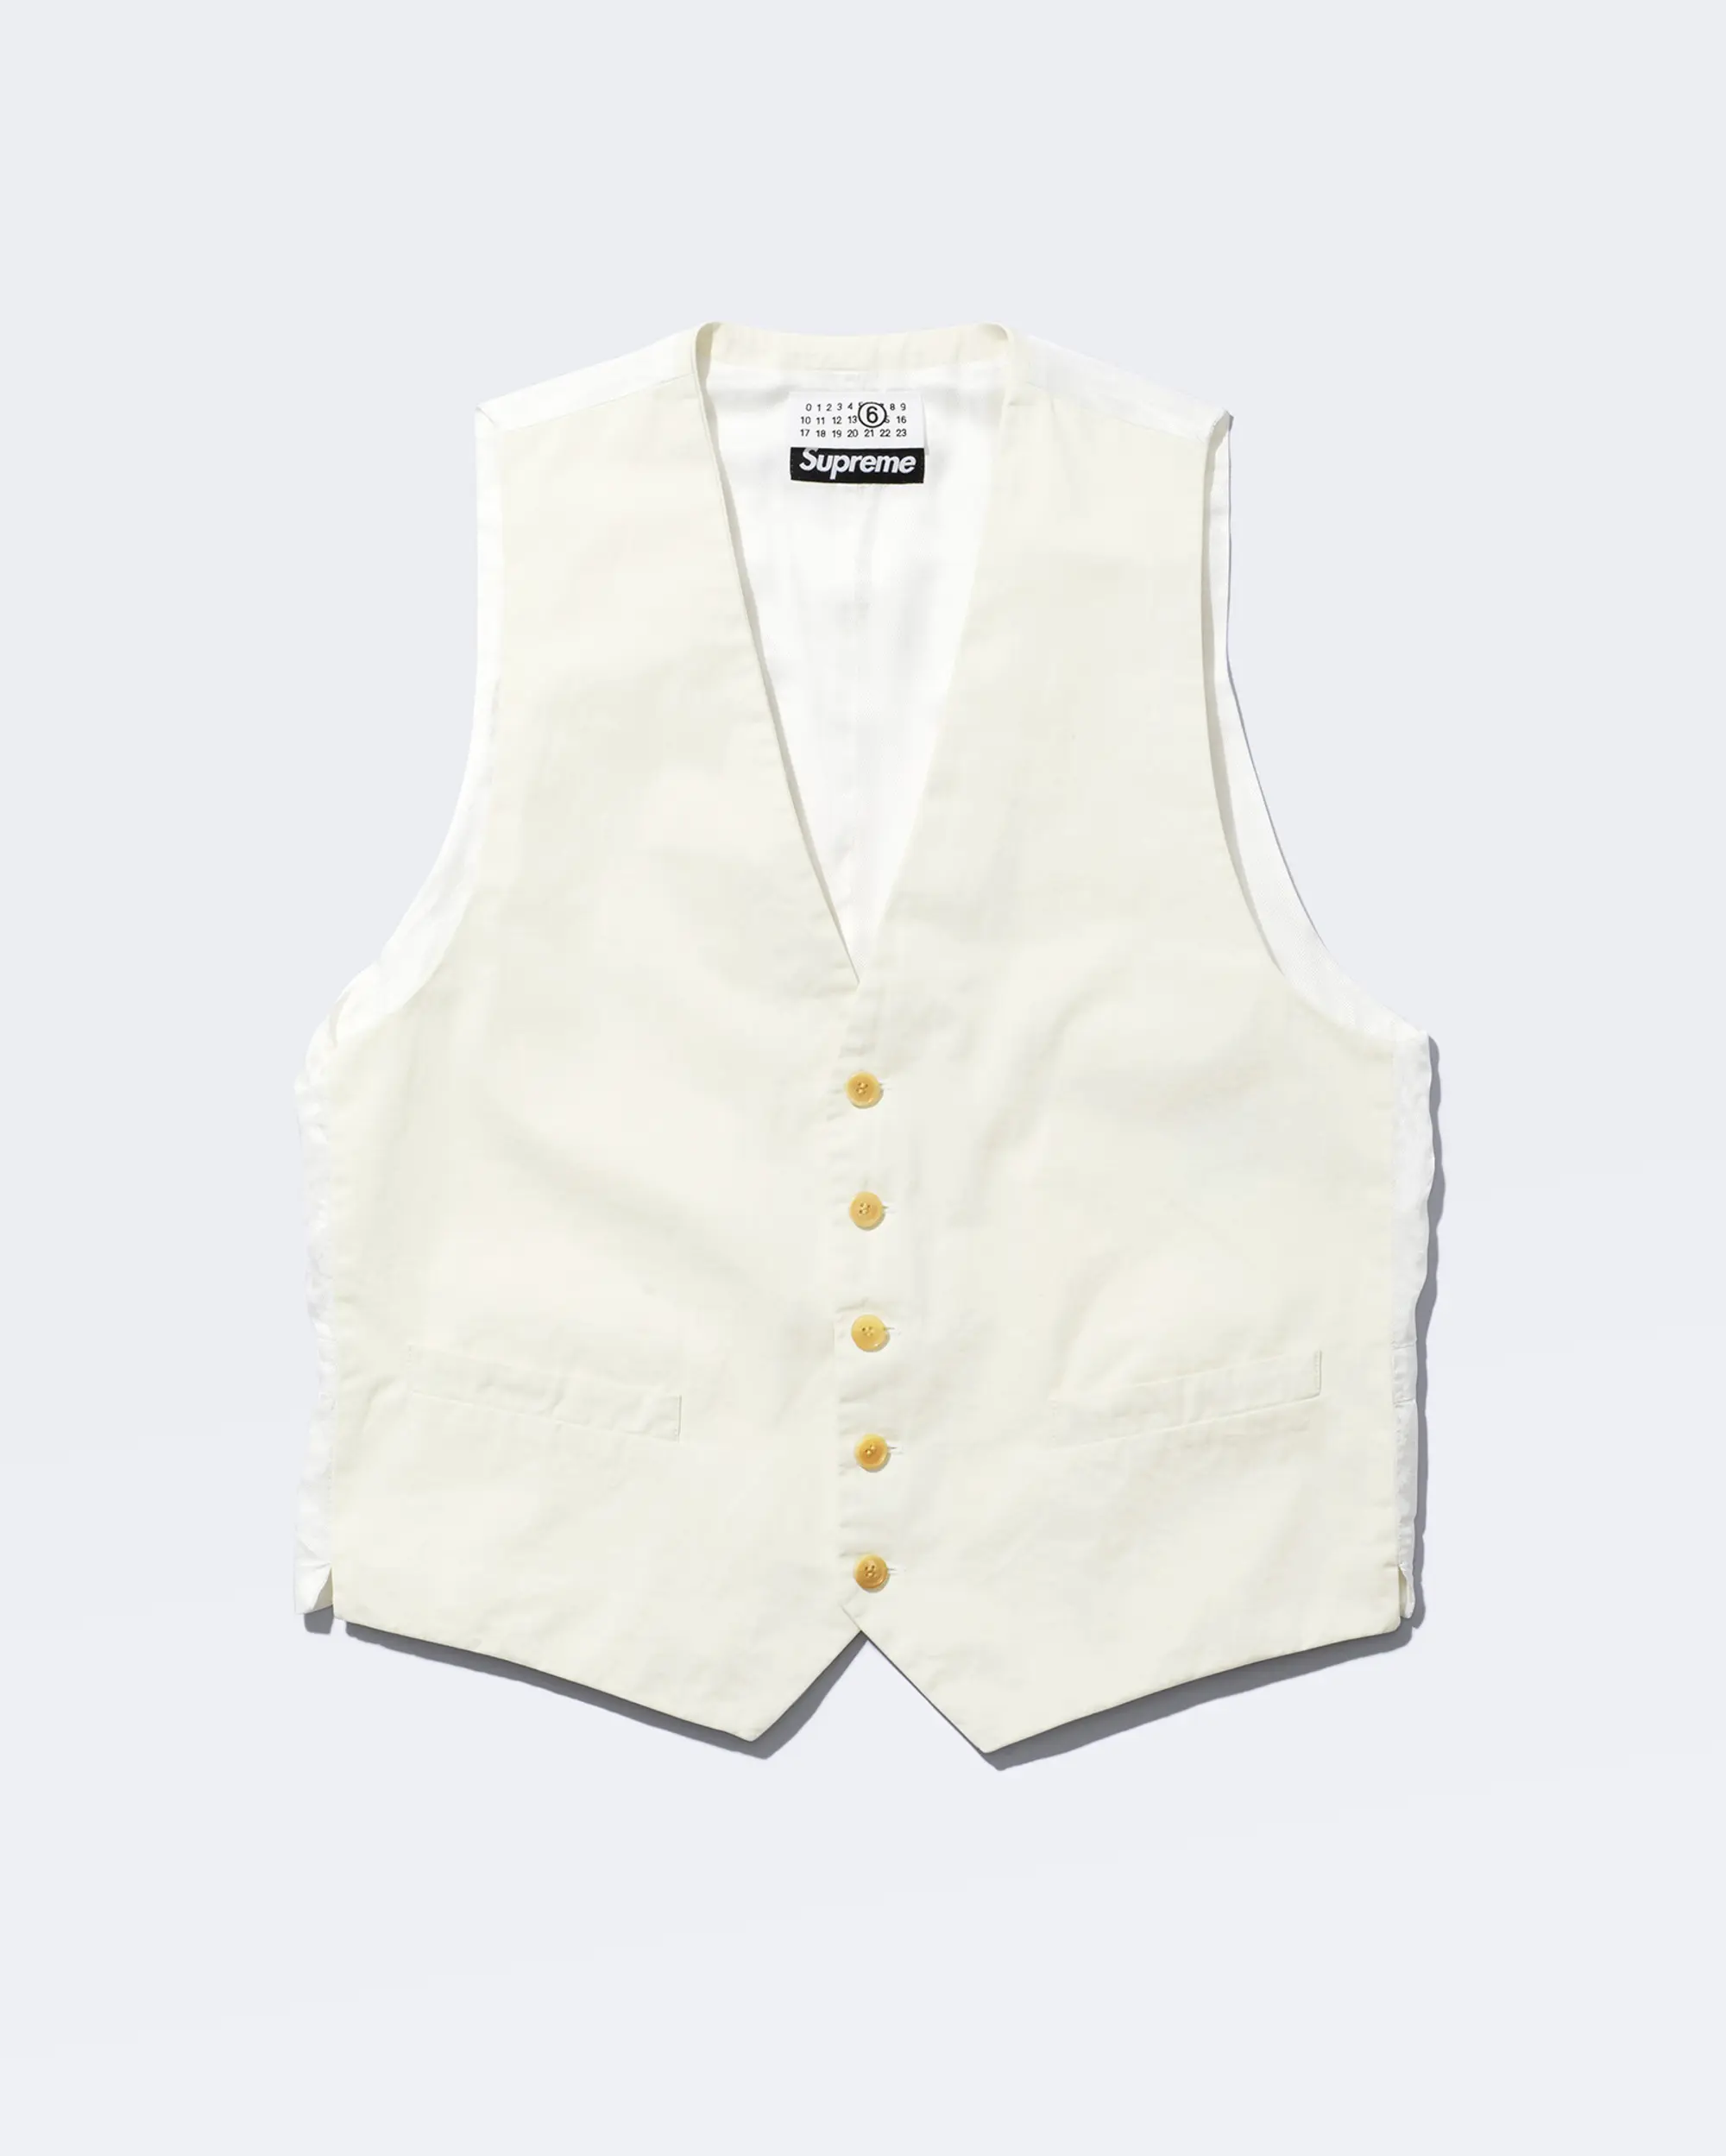 Supreme®/MM6 Maison Margiela Washed Cotton Suit Vest